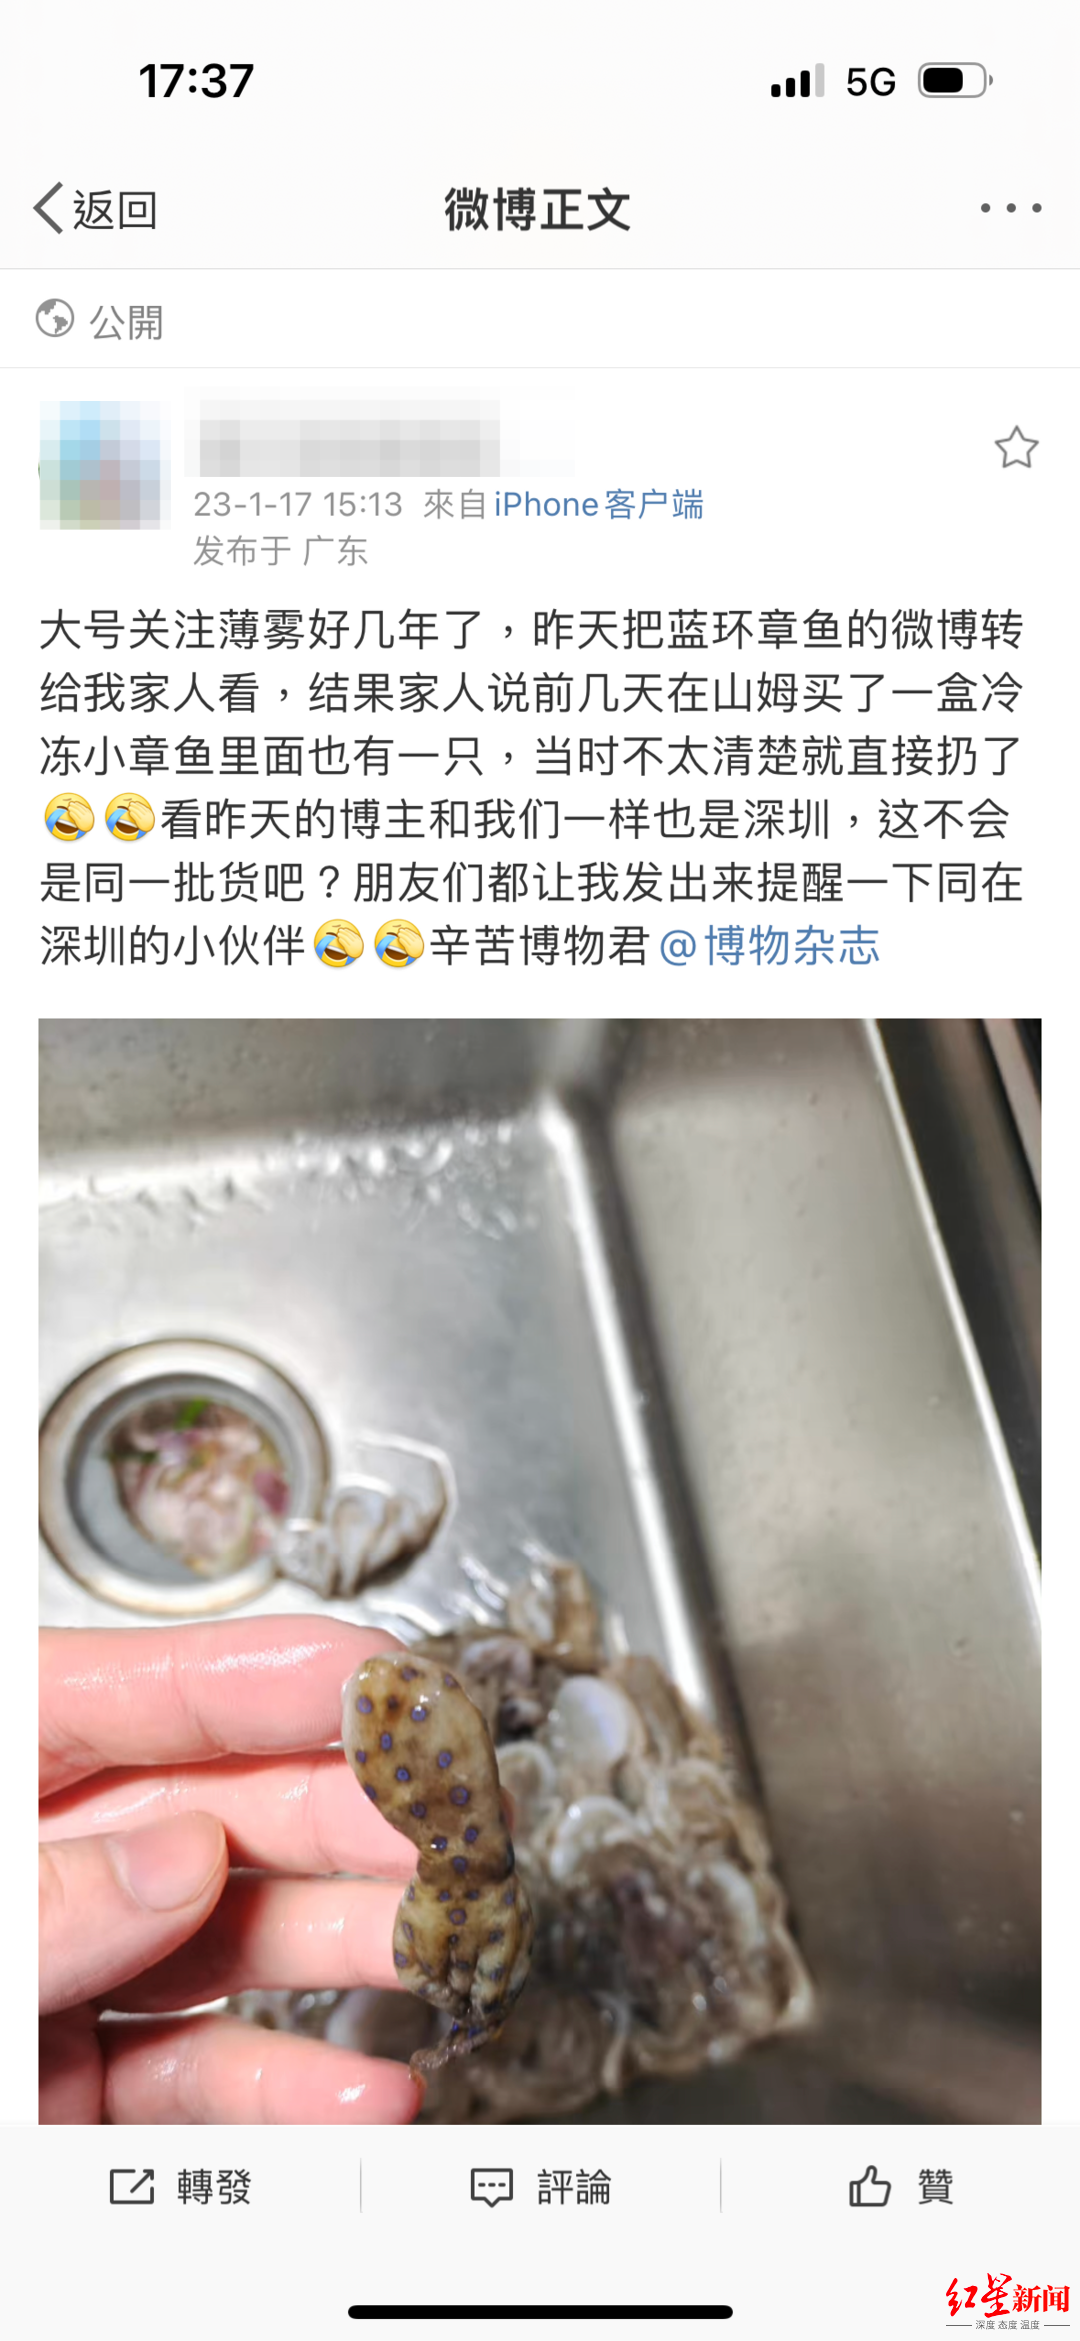 ↑深圳网友发文称在山姆上购买的冷冻小章鱼里疑似有“蓝环章鱼”